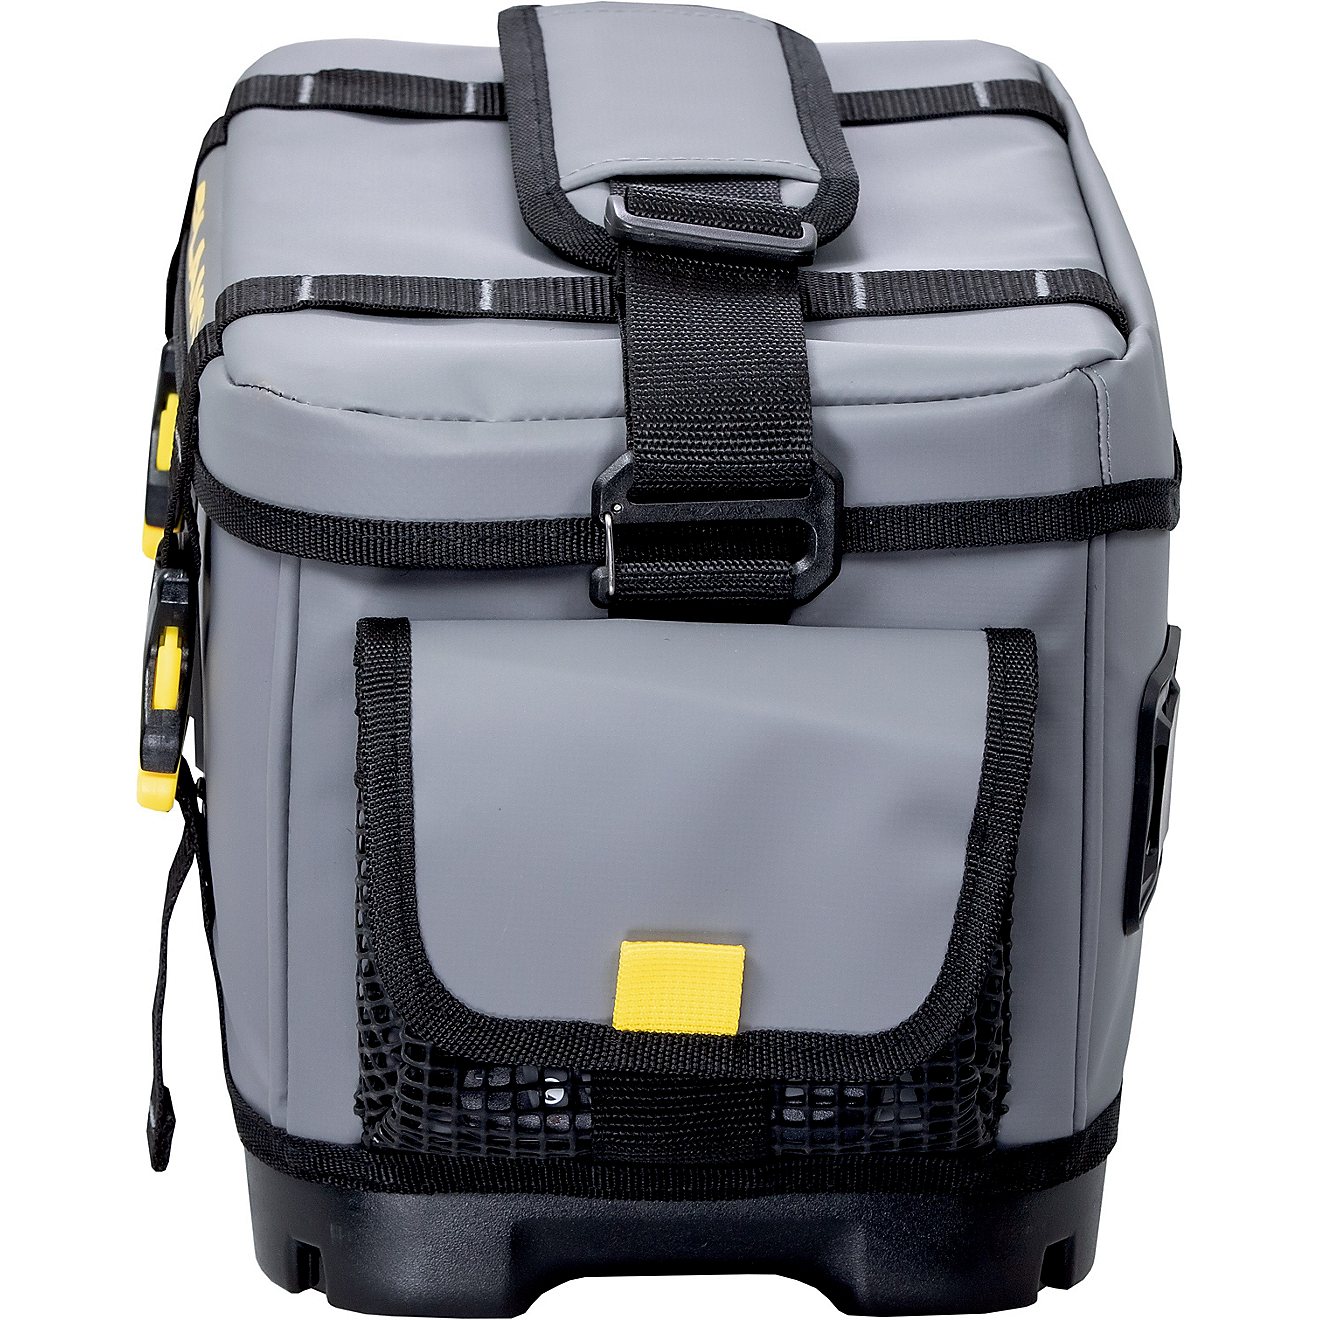  Plano Z-Series 3600 Waterproof Tackle Bag                                                                                       - view number 3